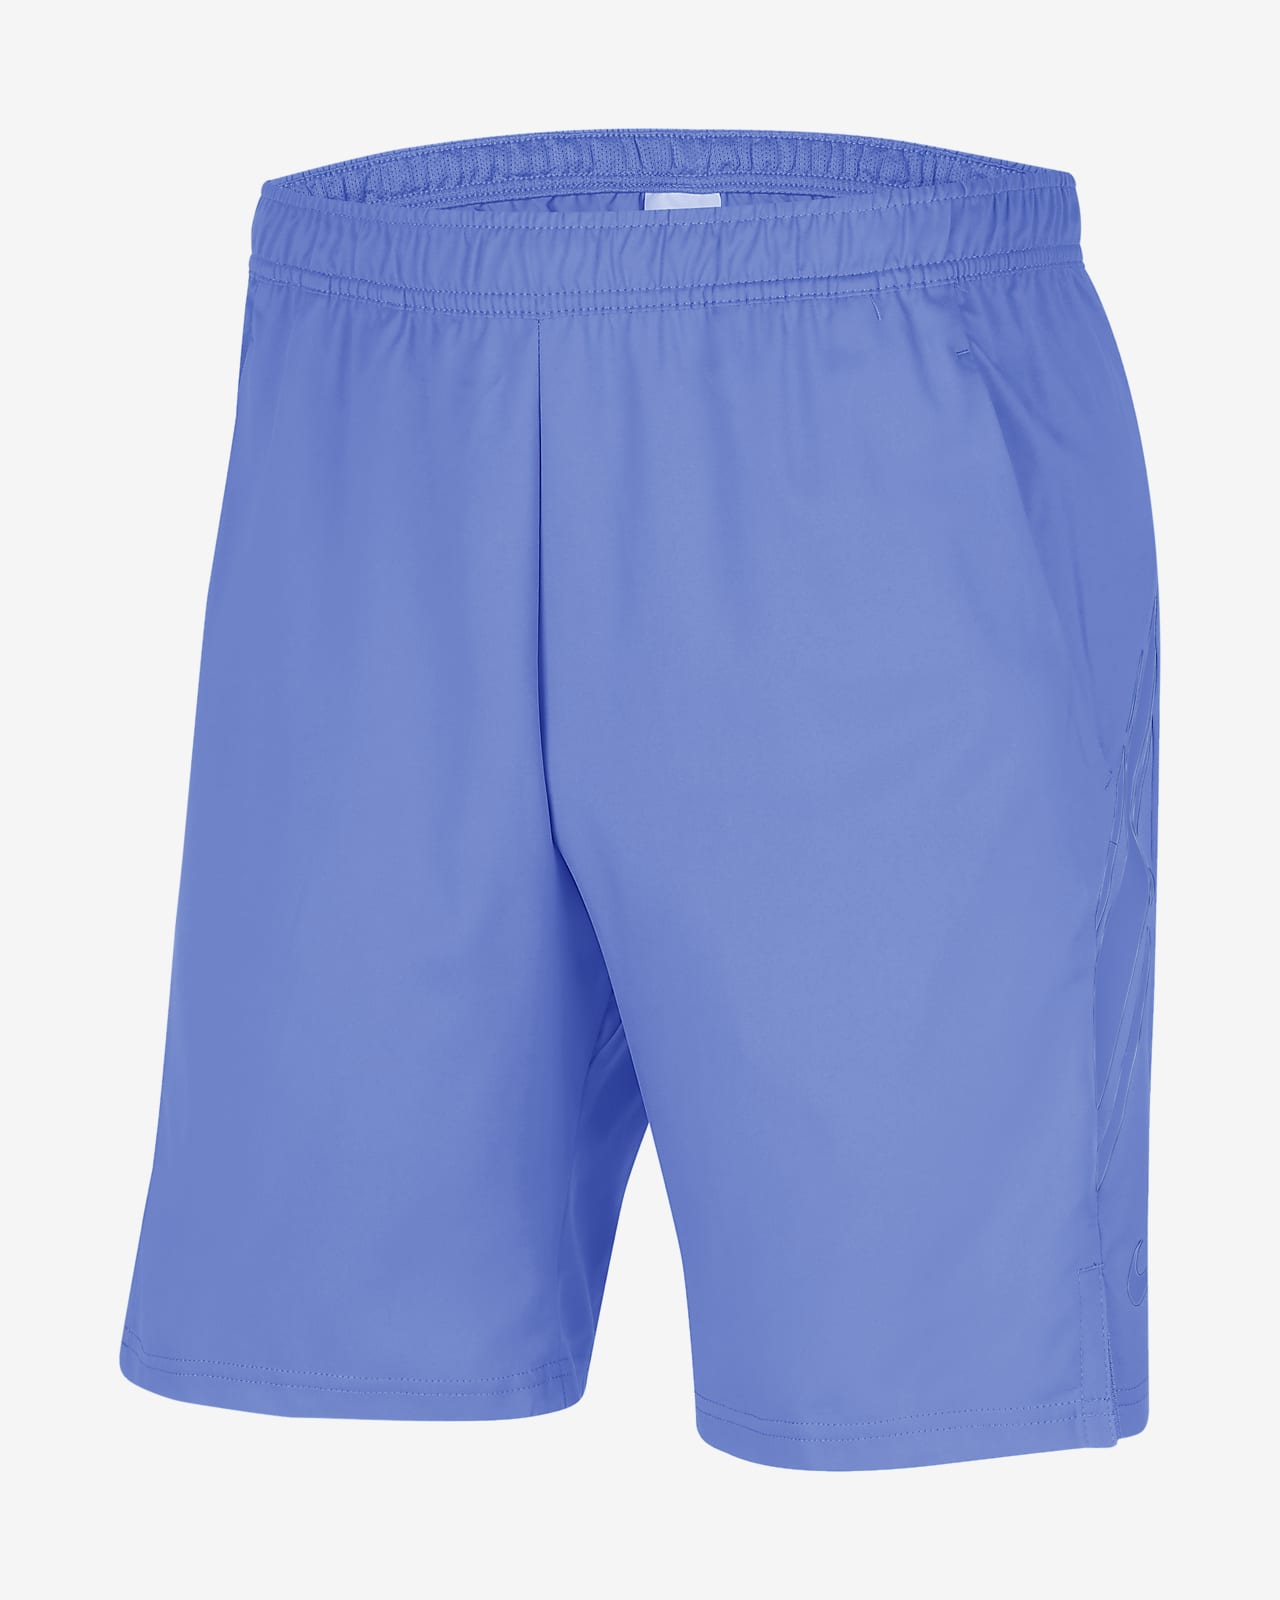 NikeCourt Dri-FIT Herren-Tennisshorts (ca. 23 cm)